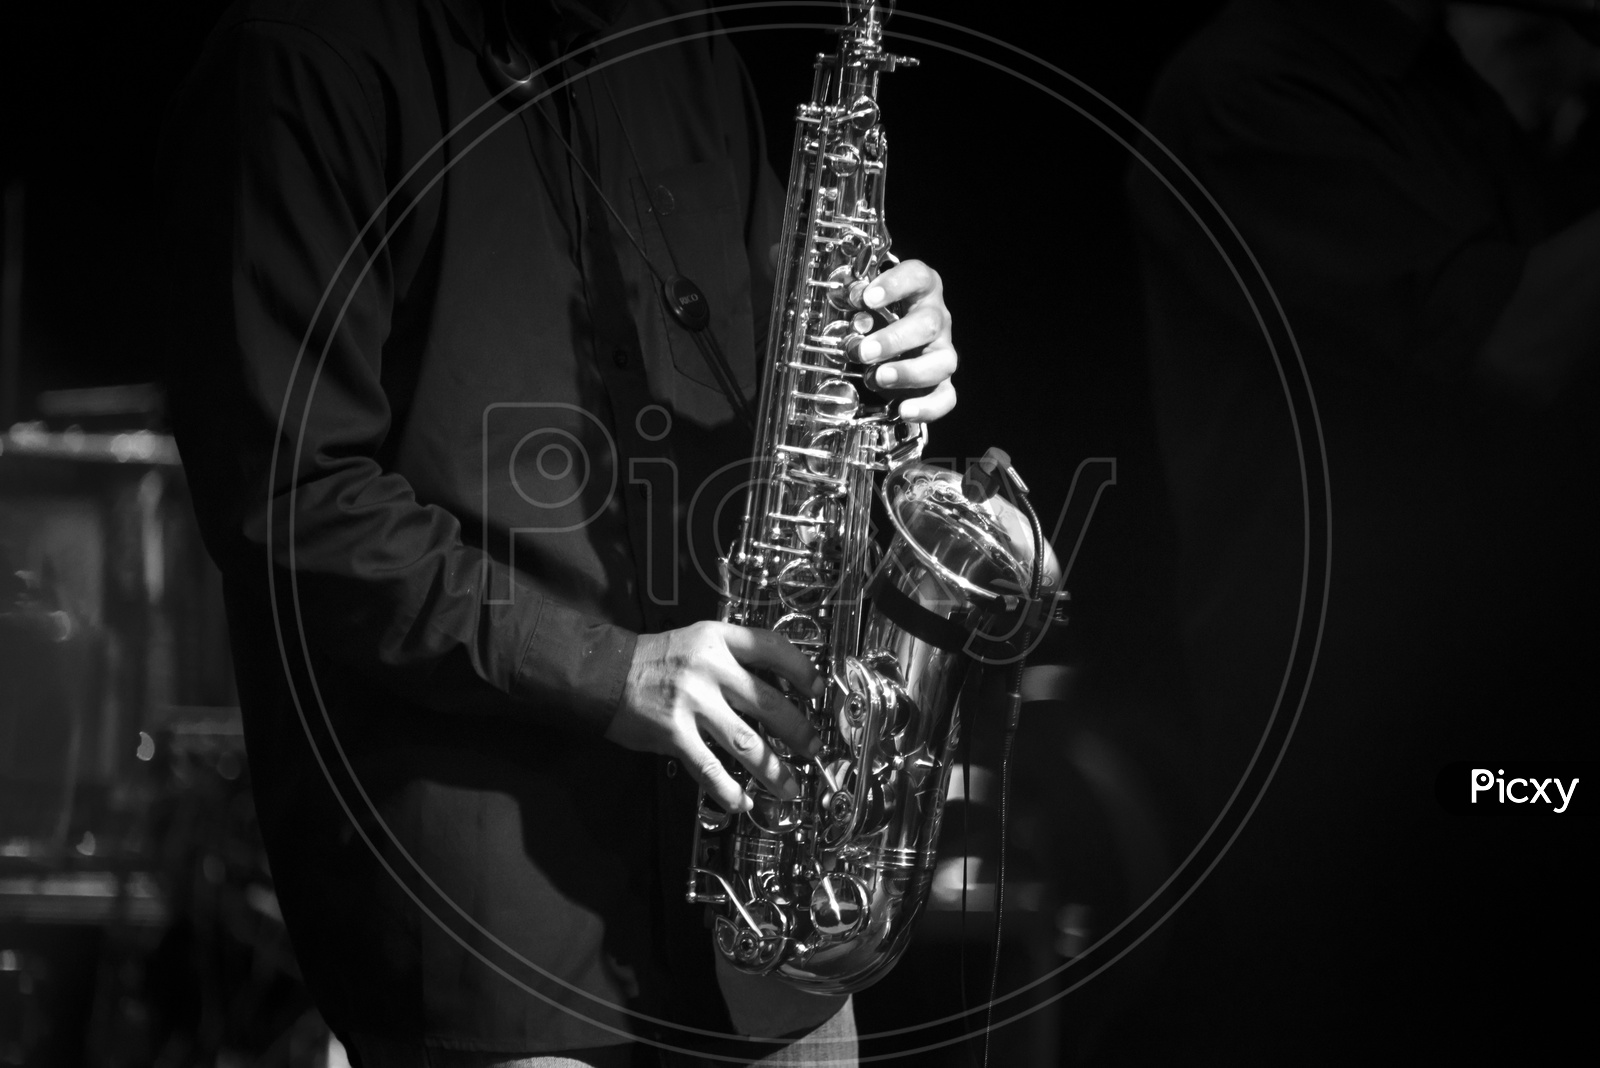 A man playing saxophone - Monochrome